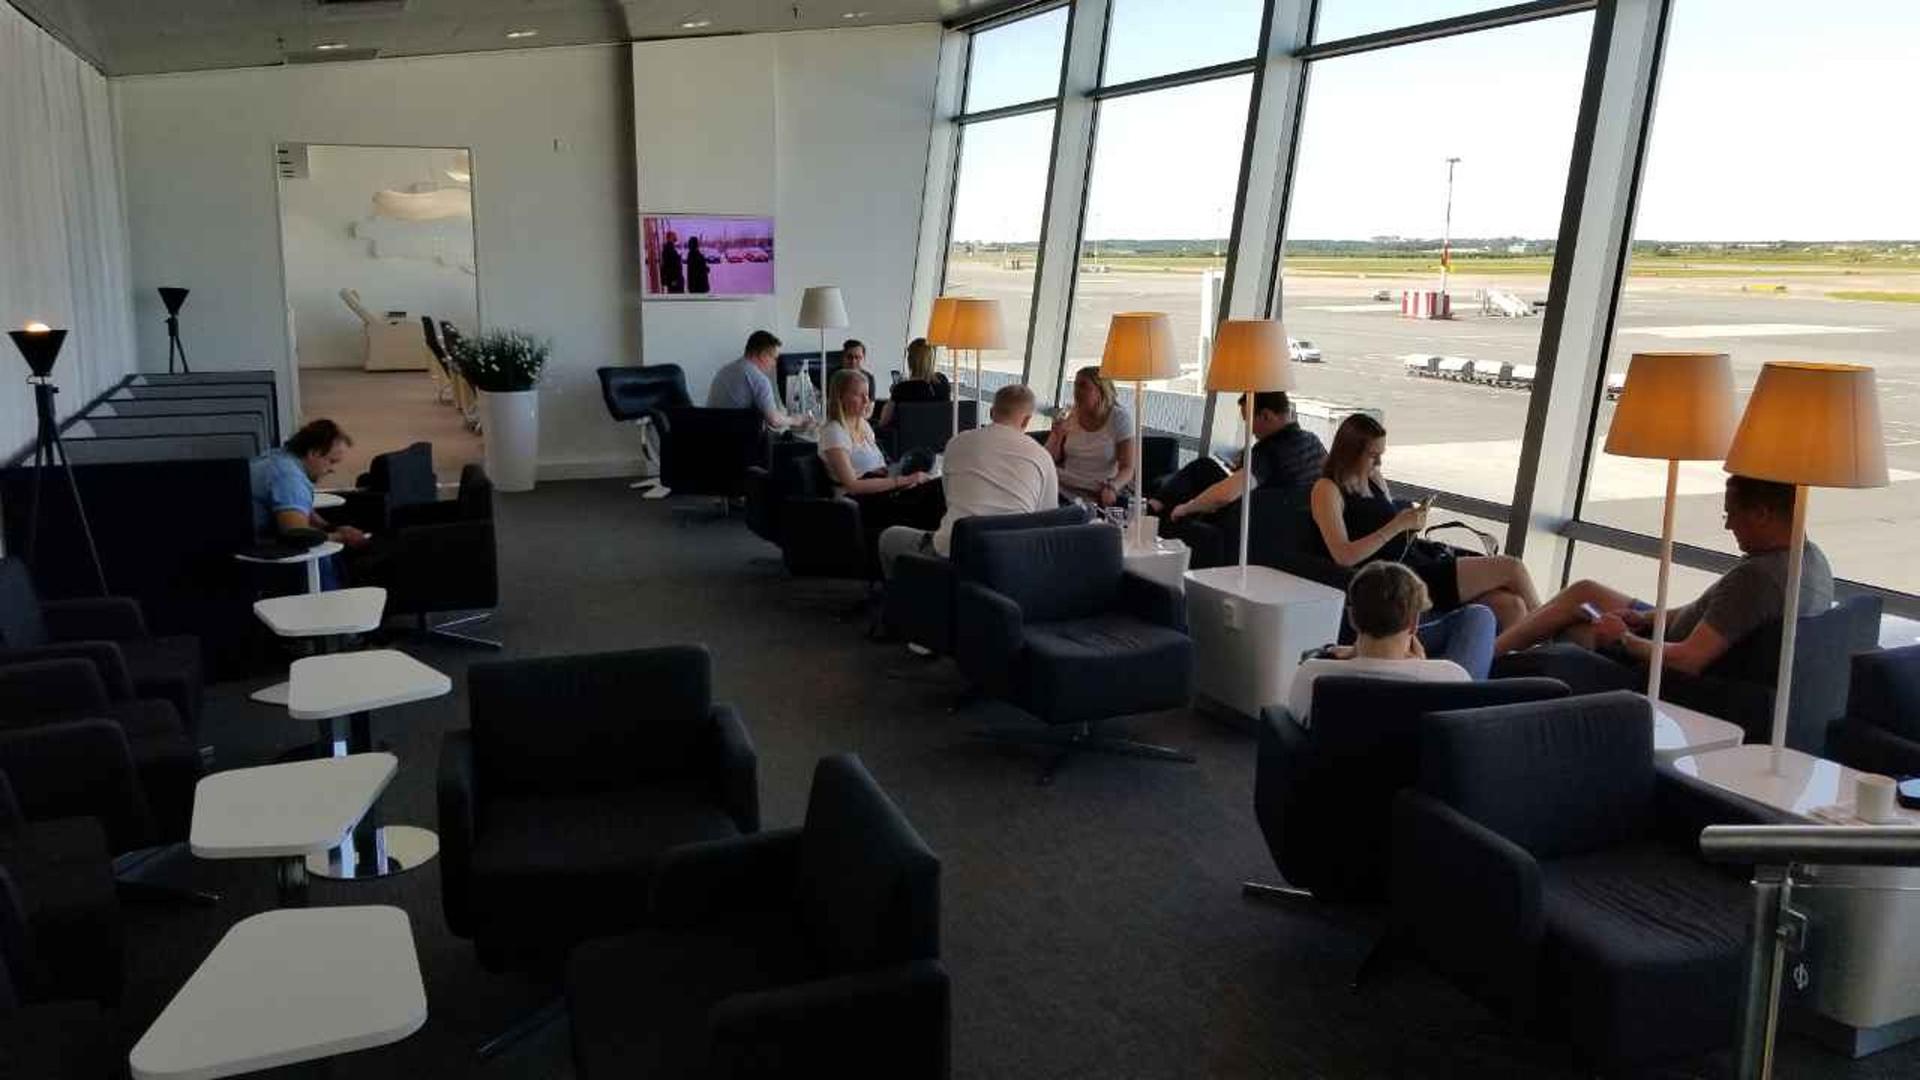 Finnair Lounge image 7 of 38